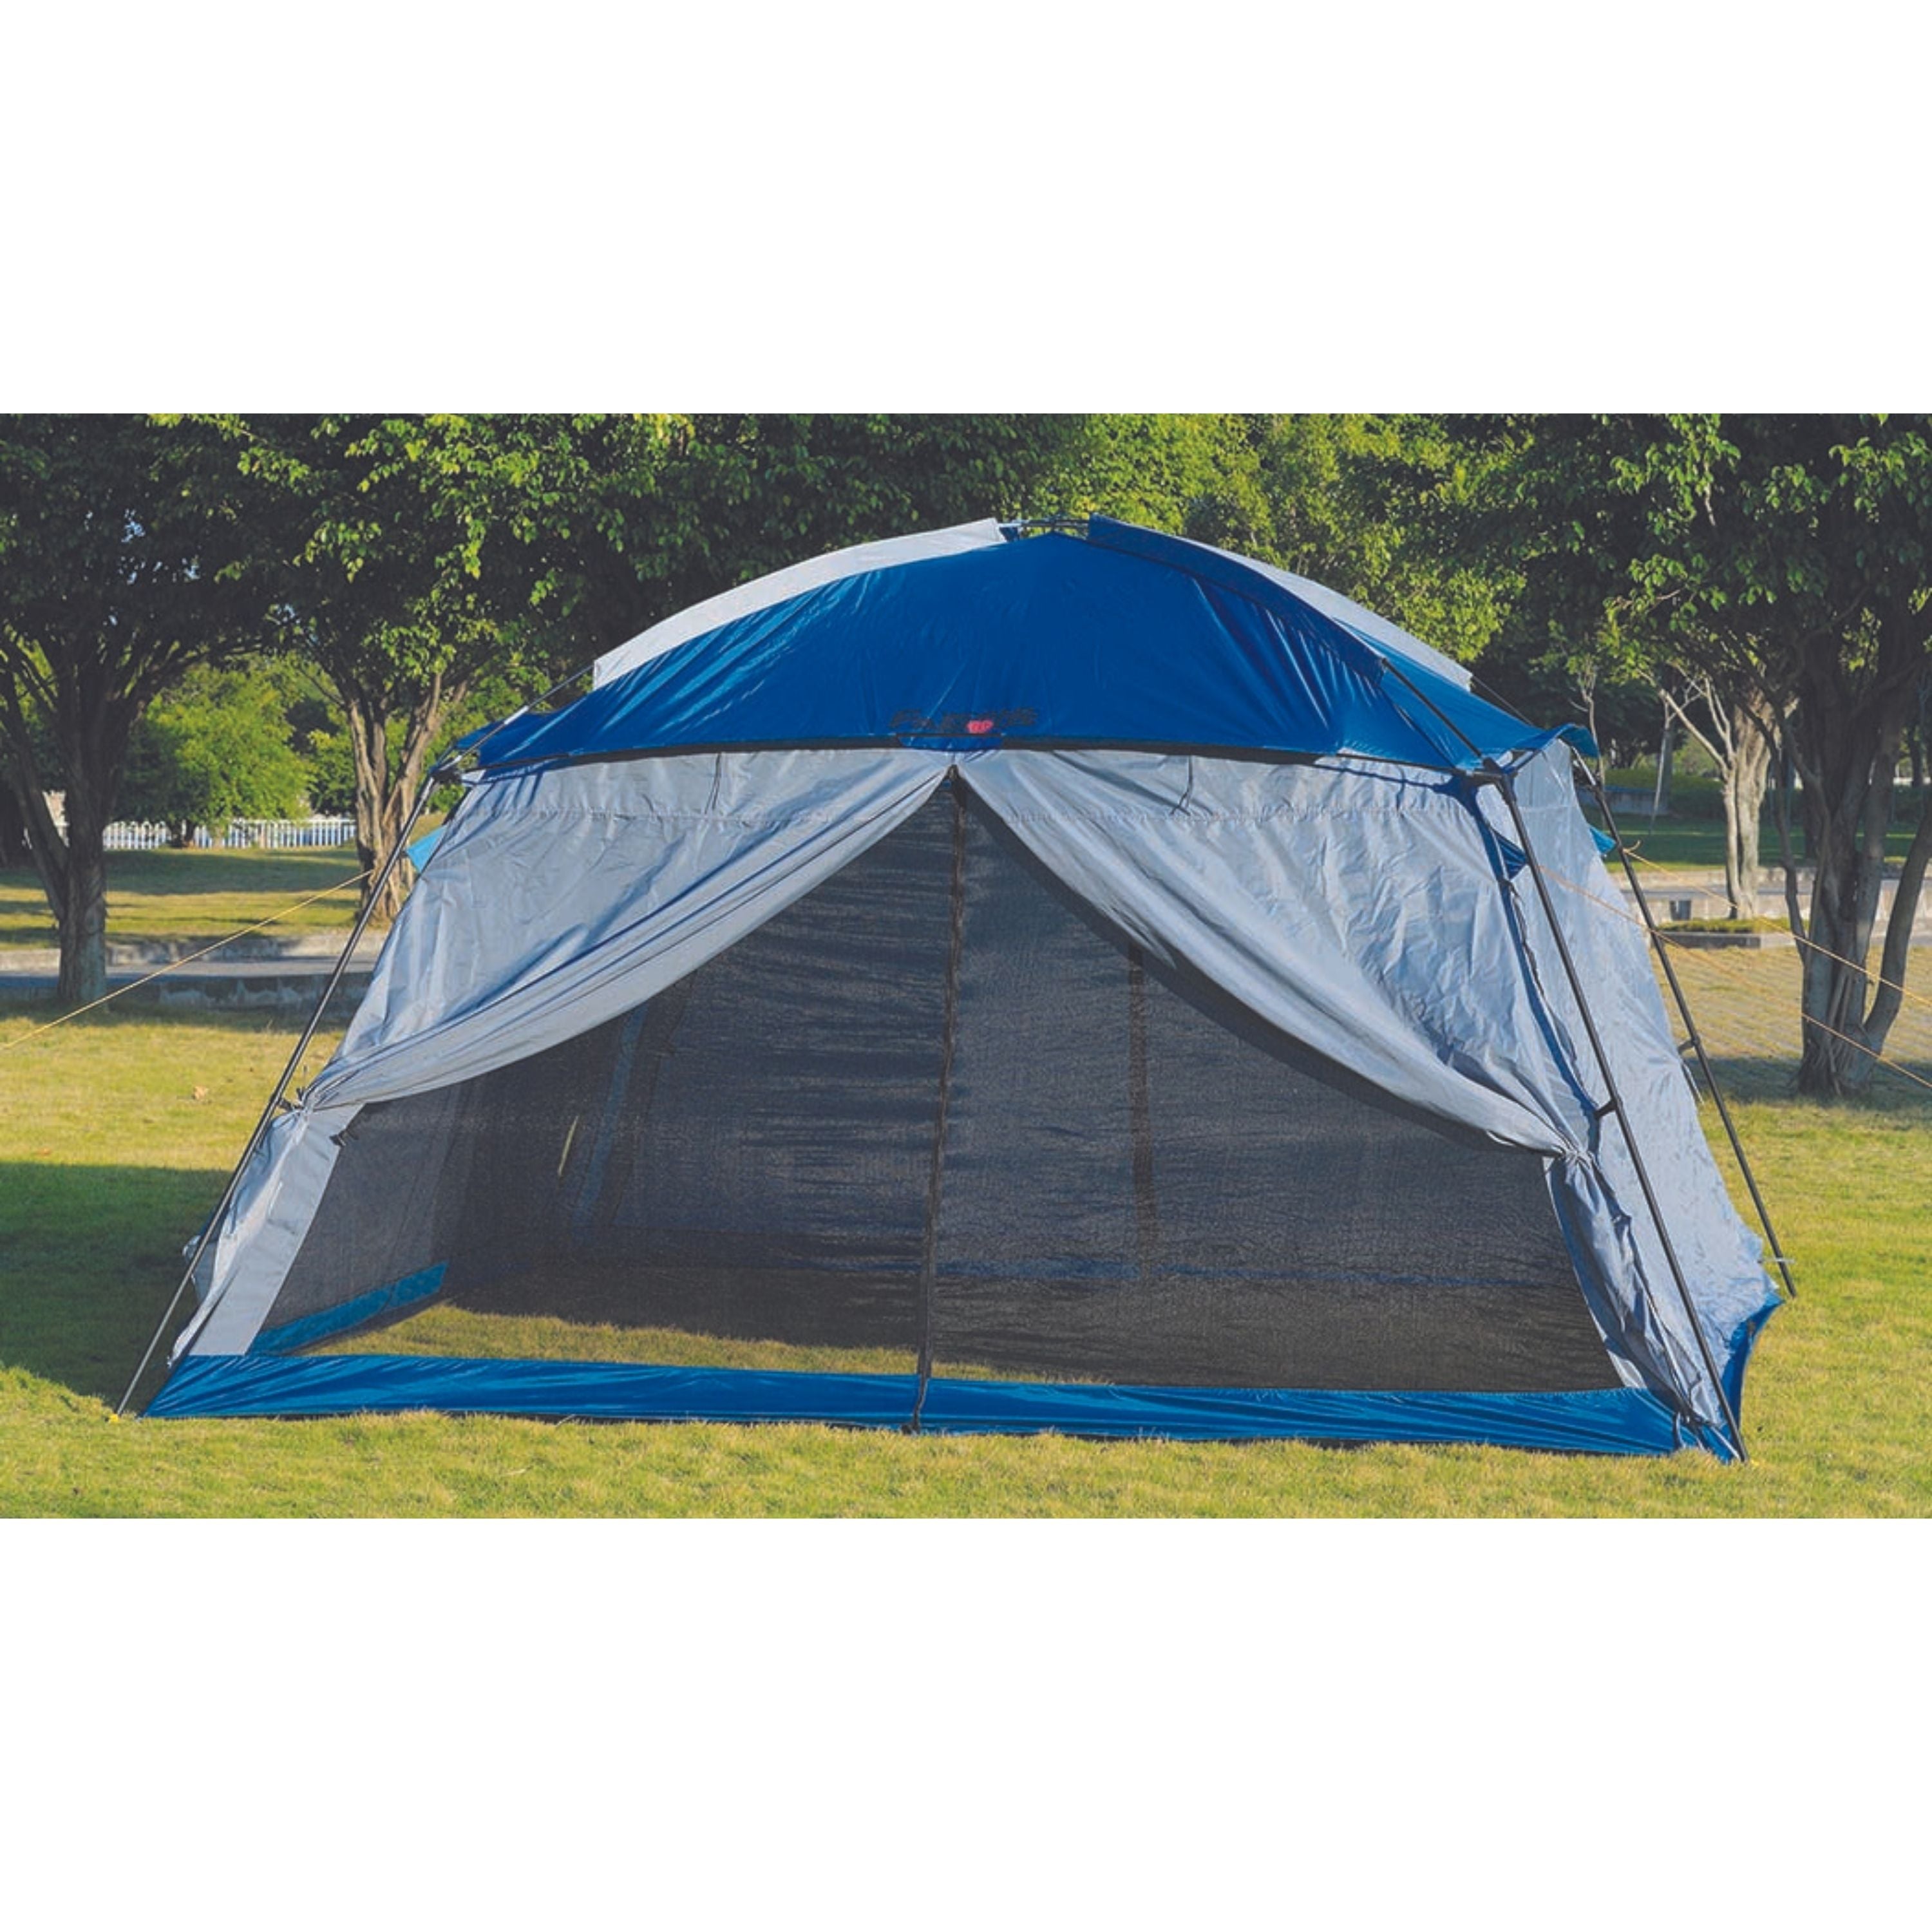 Moustiquaire Portable de voyage Moustiquaire Entièrement fermé Autonome  pliable Moustiquaire Tente Camping Mosquito Rideau